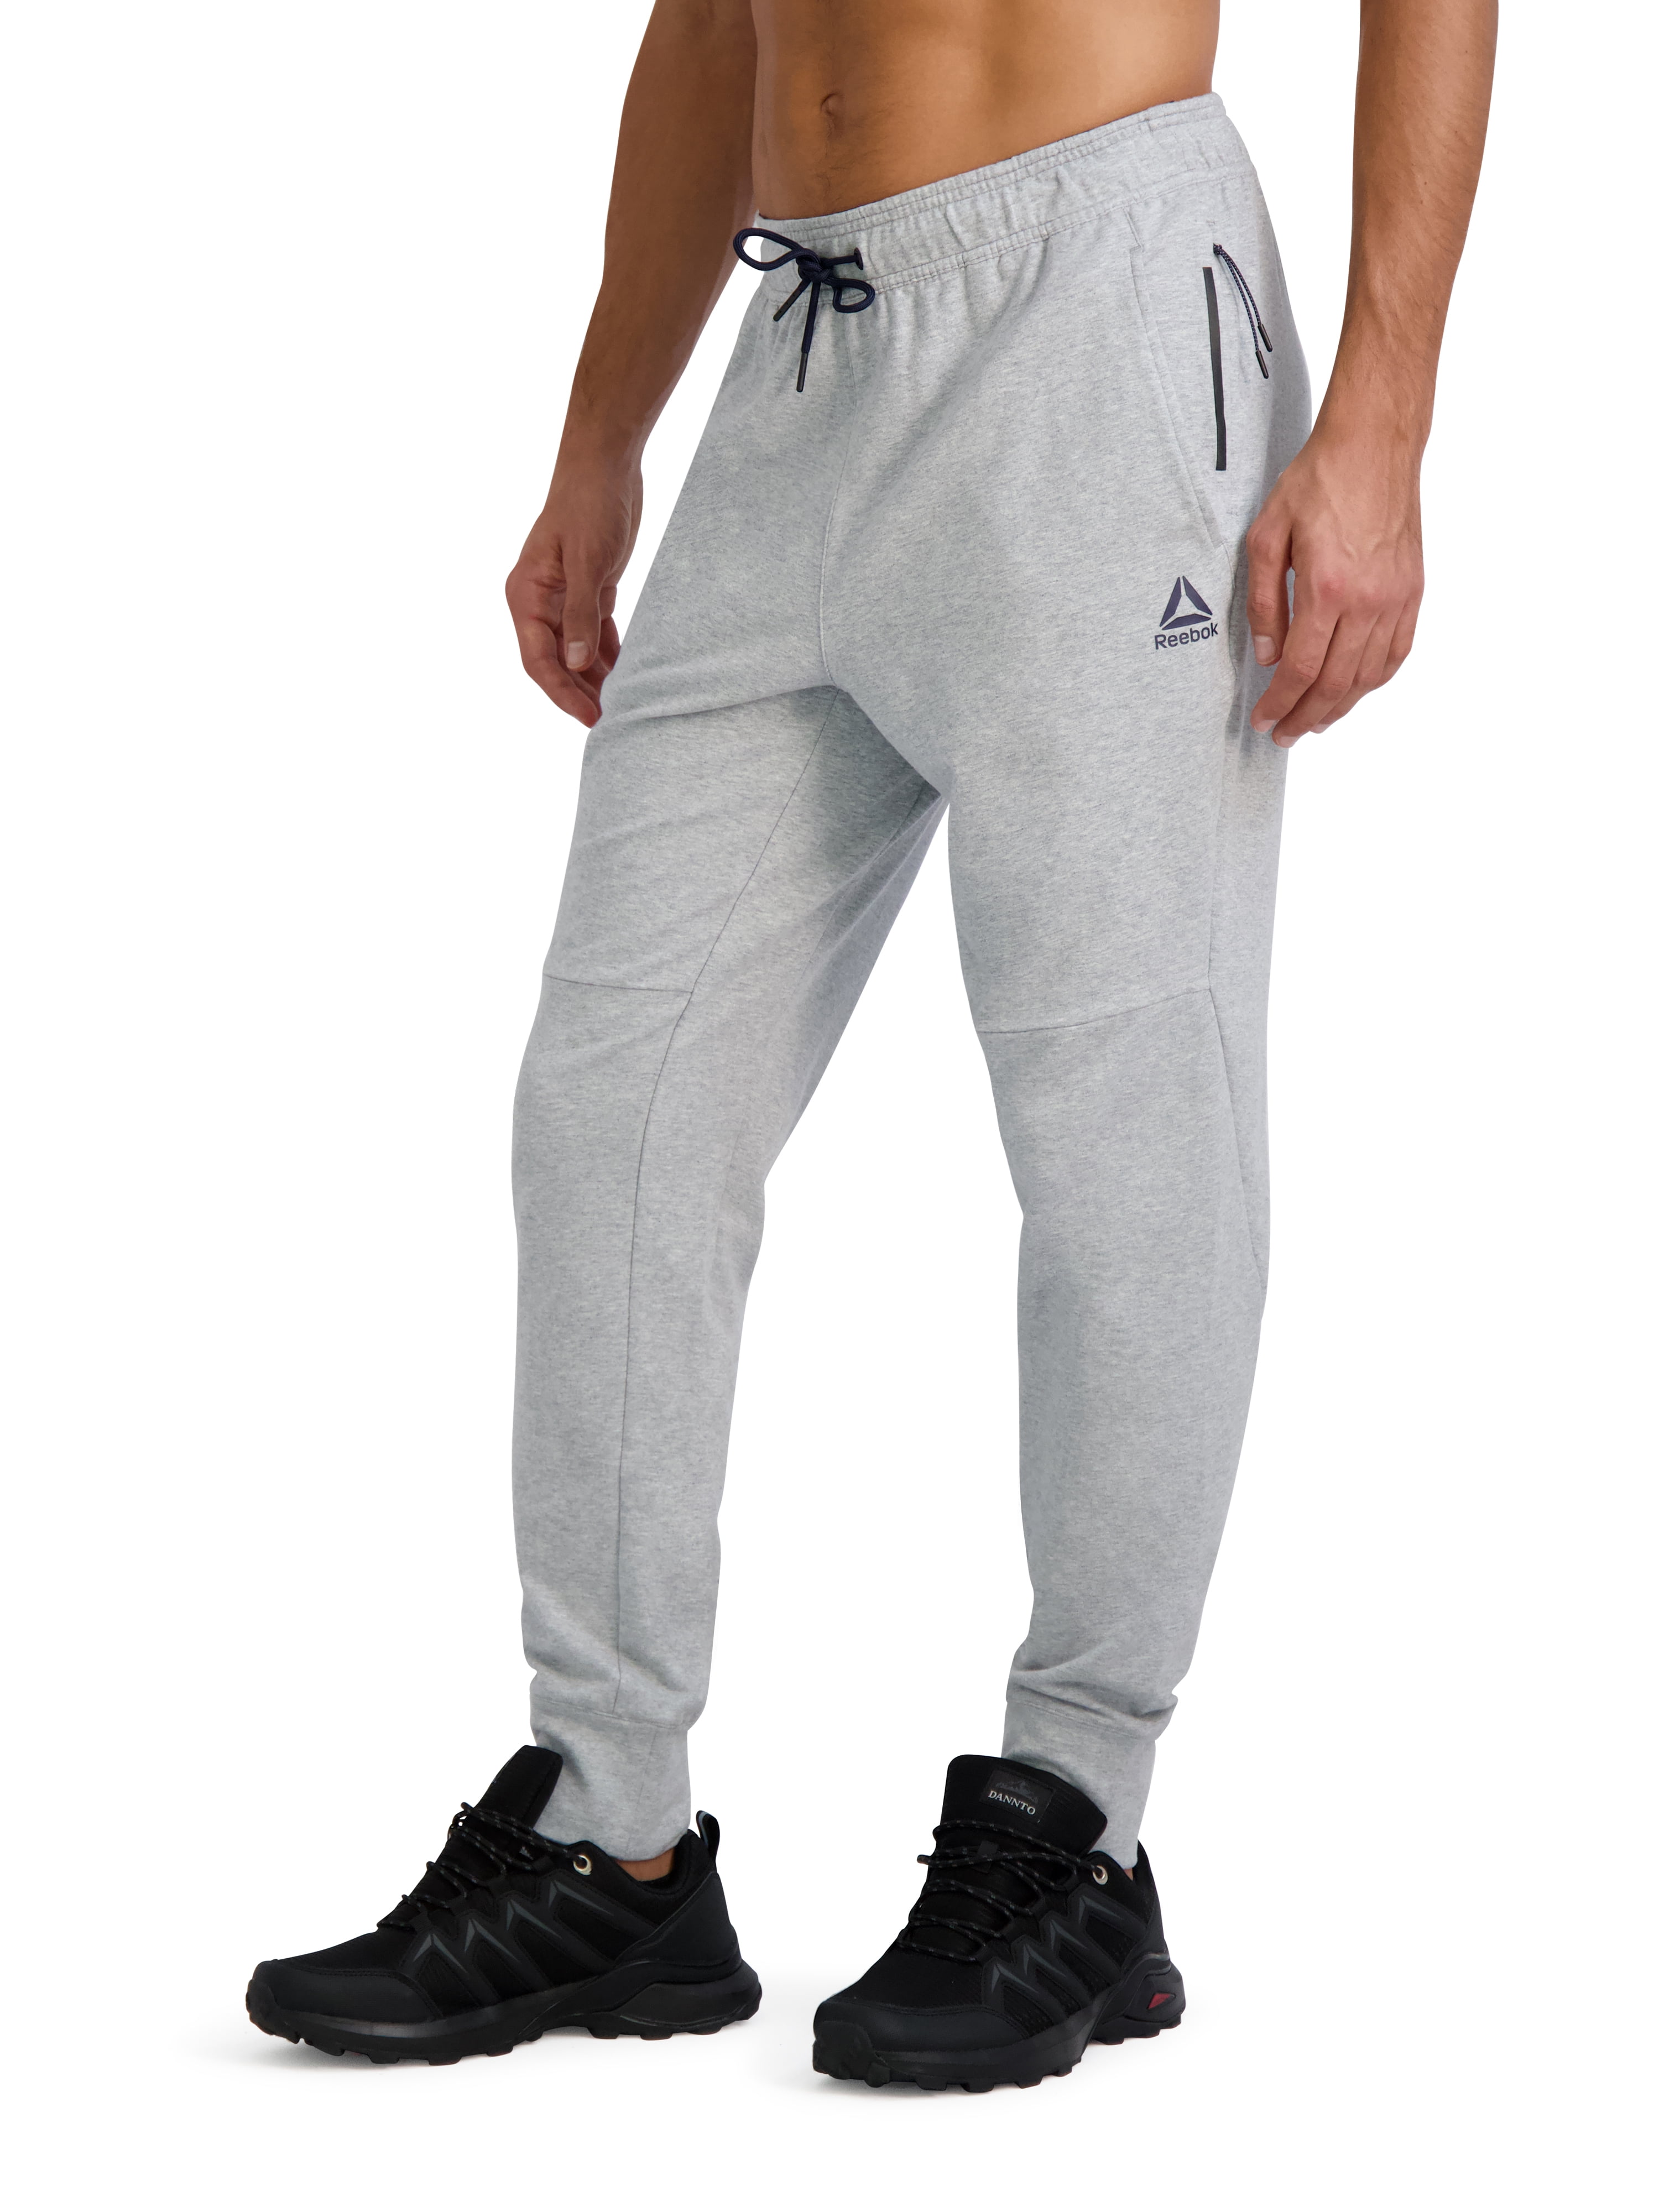 Reebok Men's and Big Men's Fleece Sweatpants, up to sizes - Walmart.com